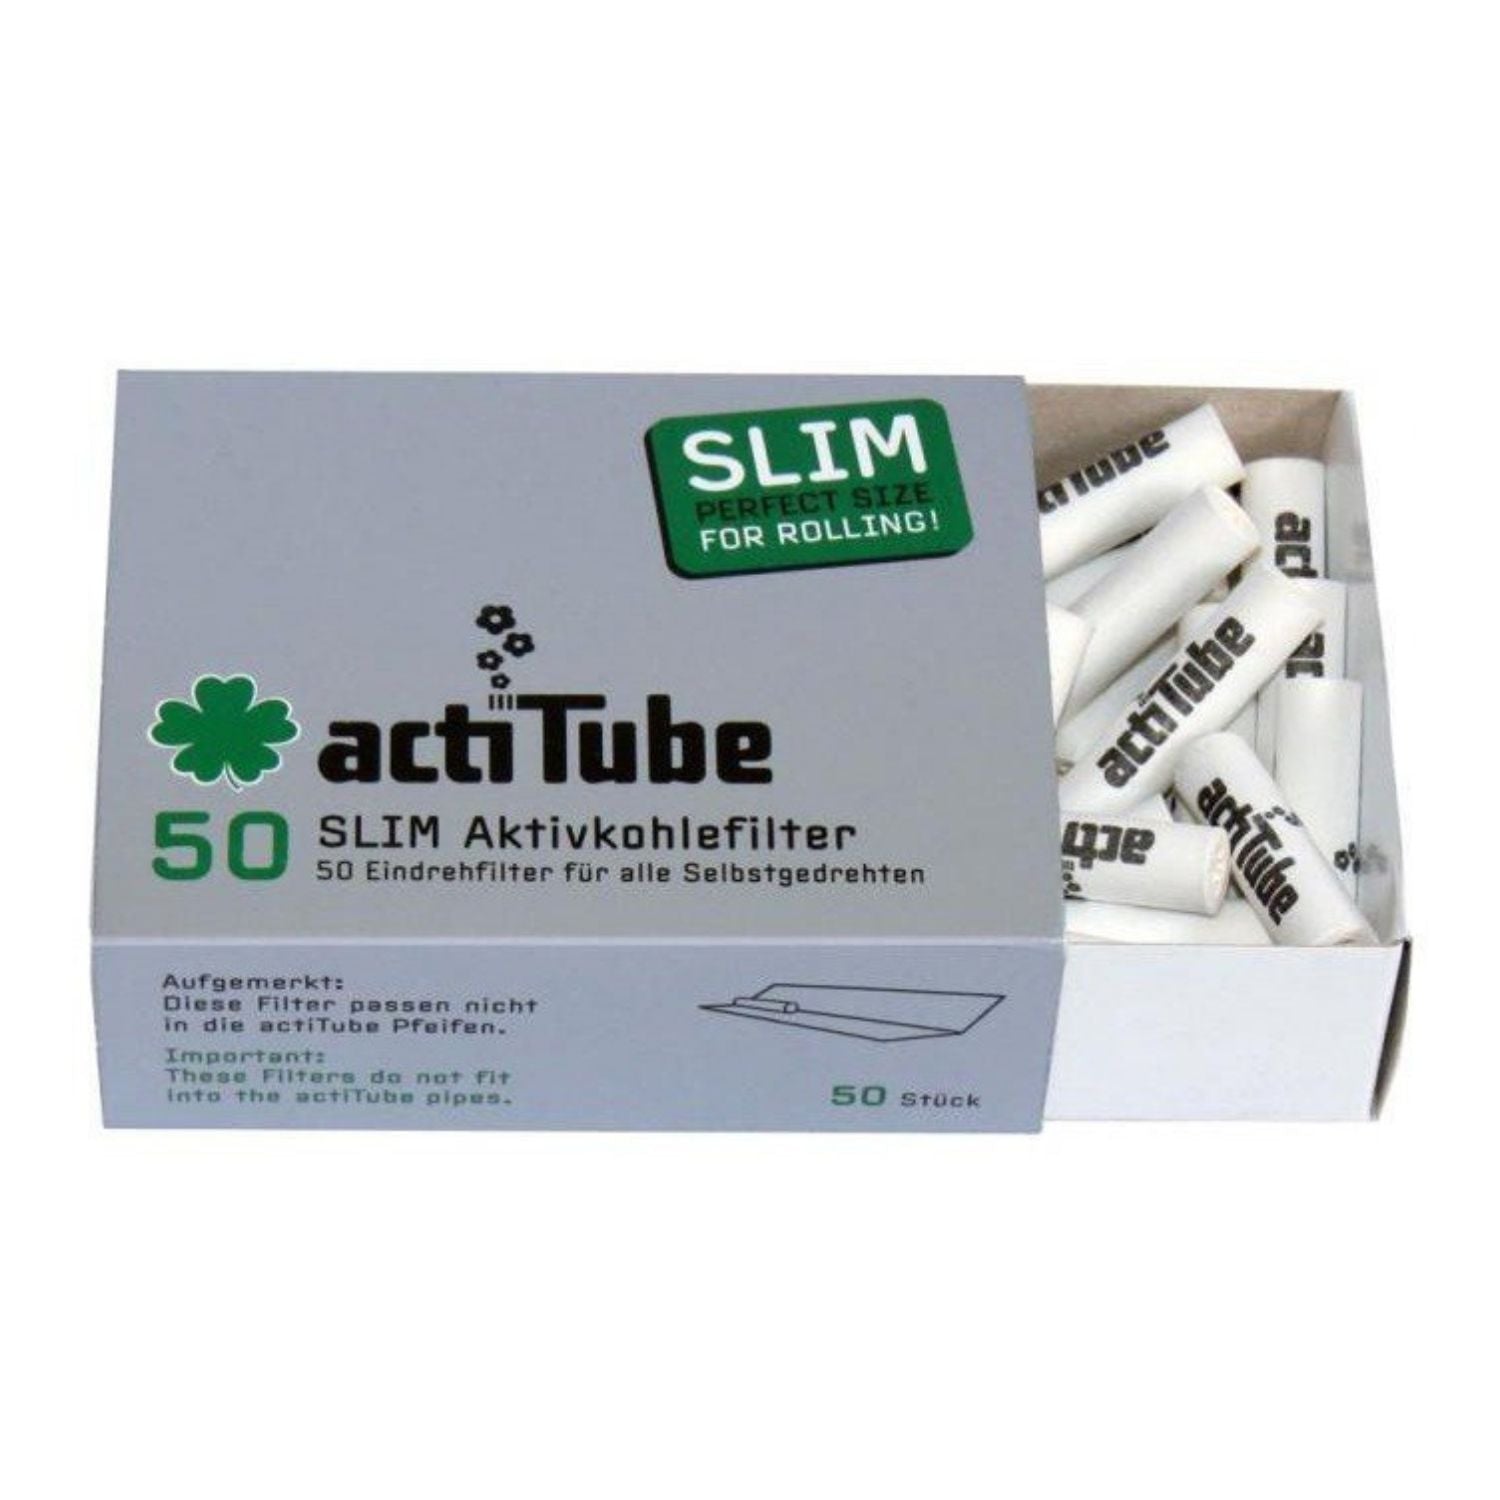 Wholesale Actitube active carbon slim filters - 20pcs